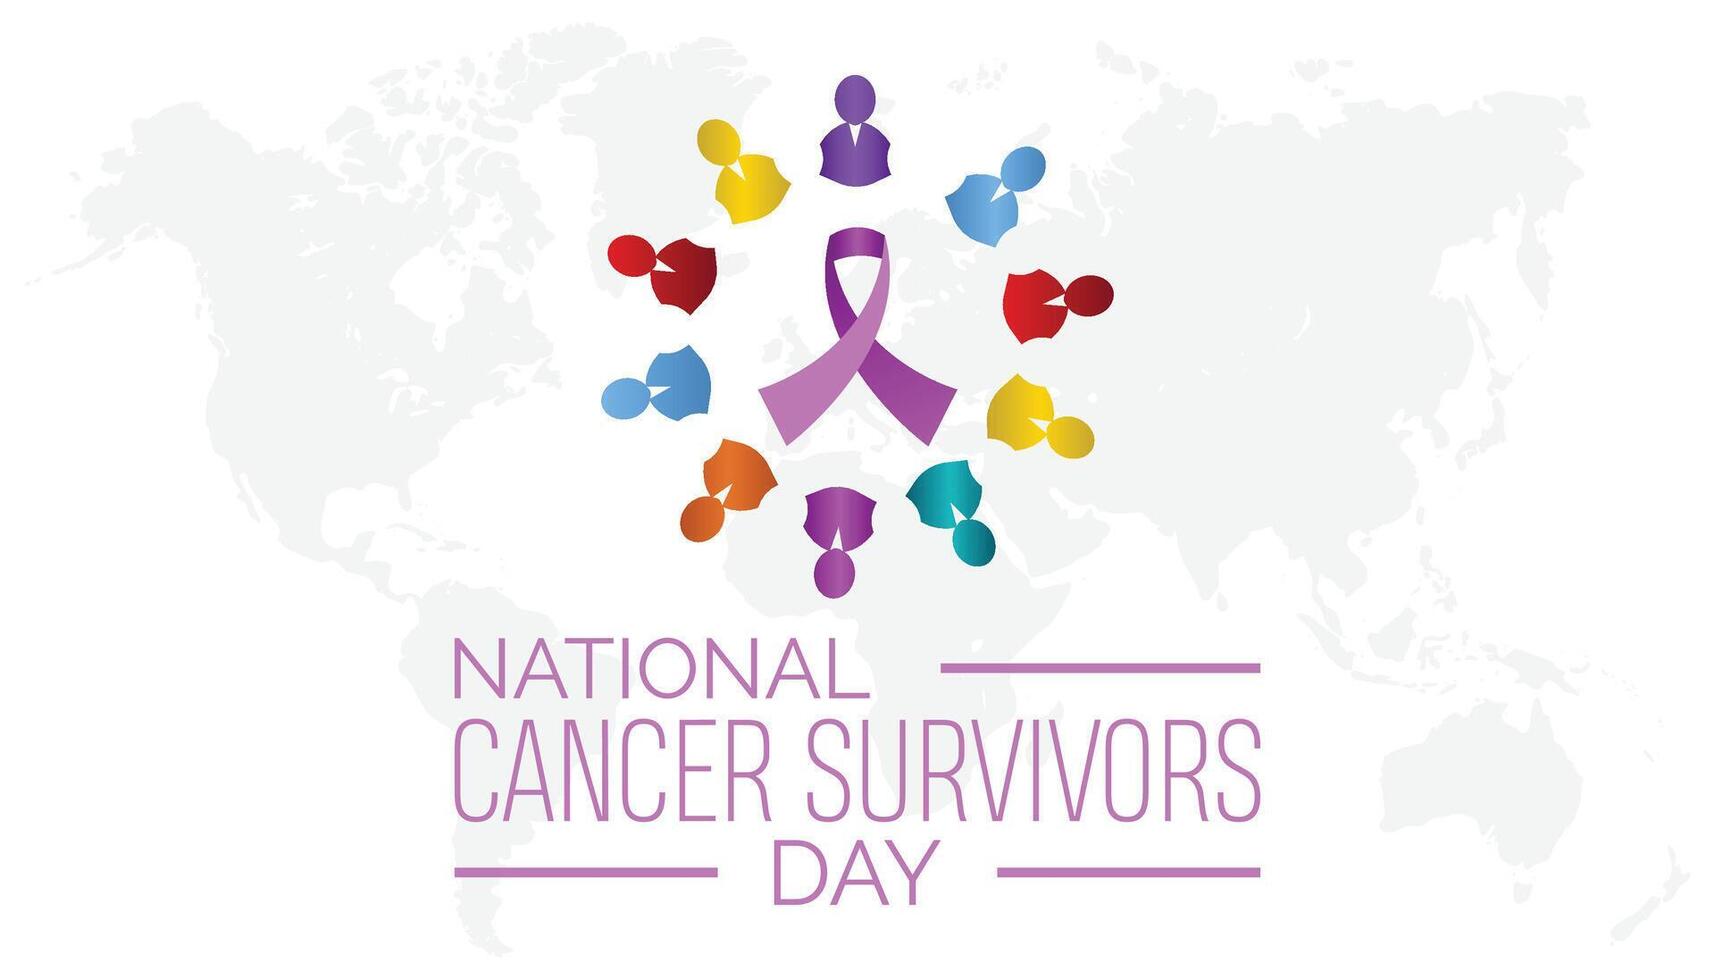 nationell cancer överlevande dag observerats varje år i juni. mall för bakgrund, baner, kort, affisch med text inskrift. vektor